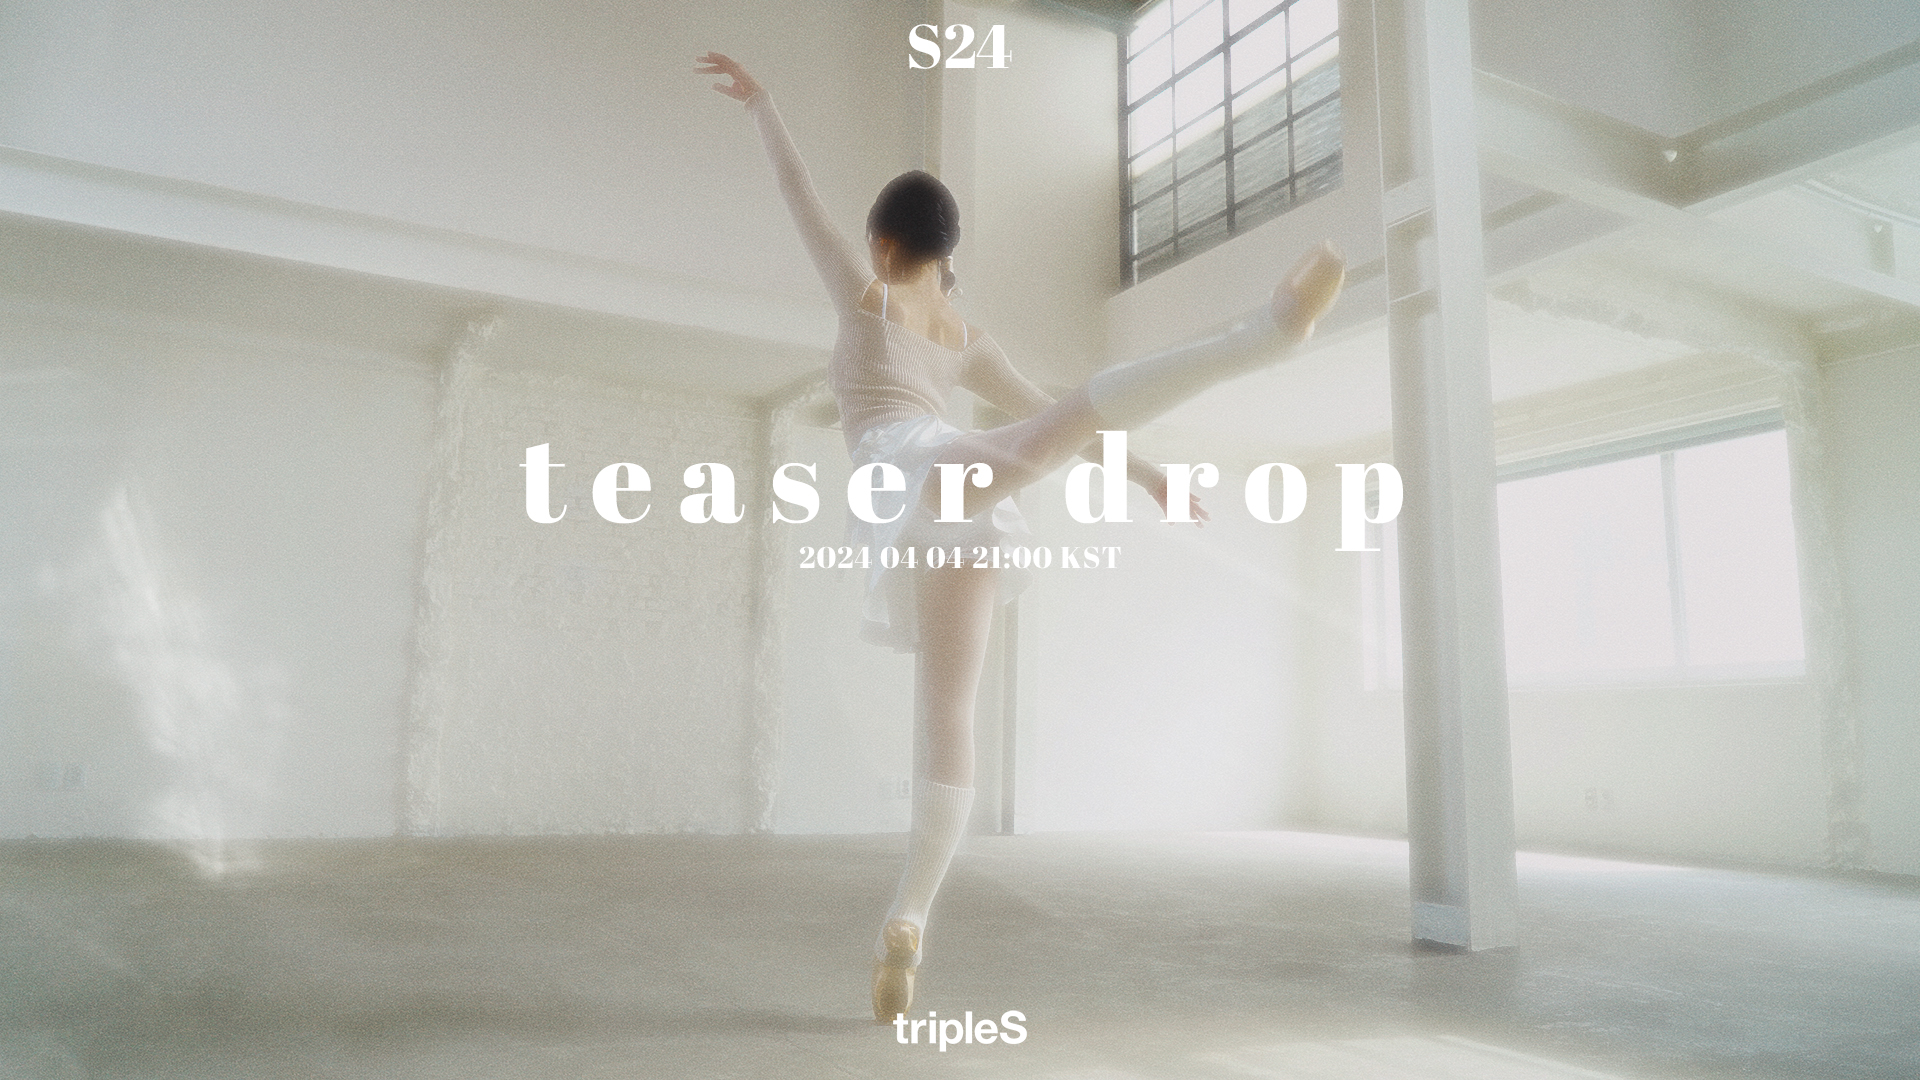 [정보/소식] 2024.04.04S24 teaser drop | 인스티즈